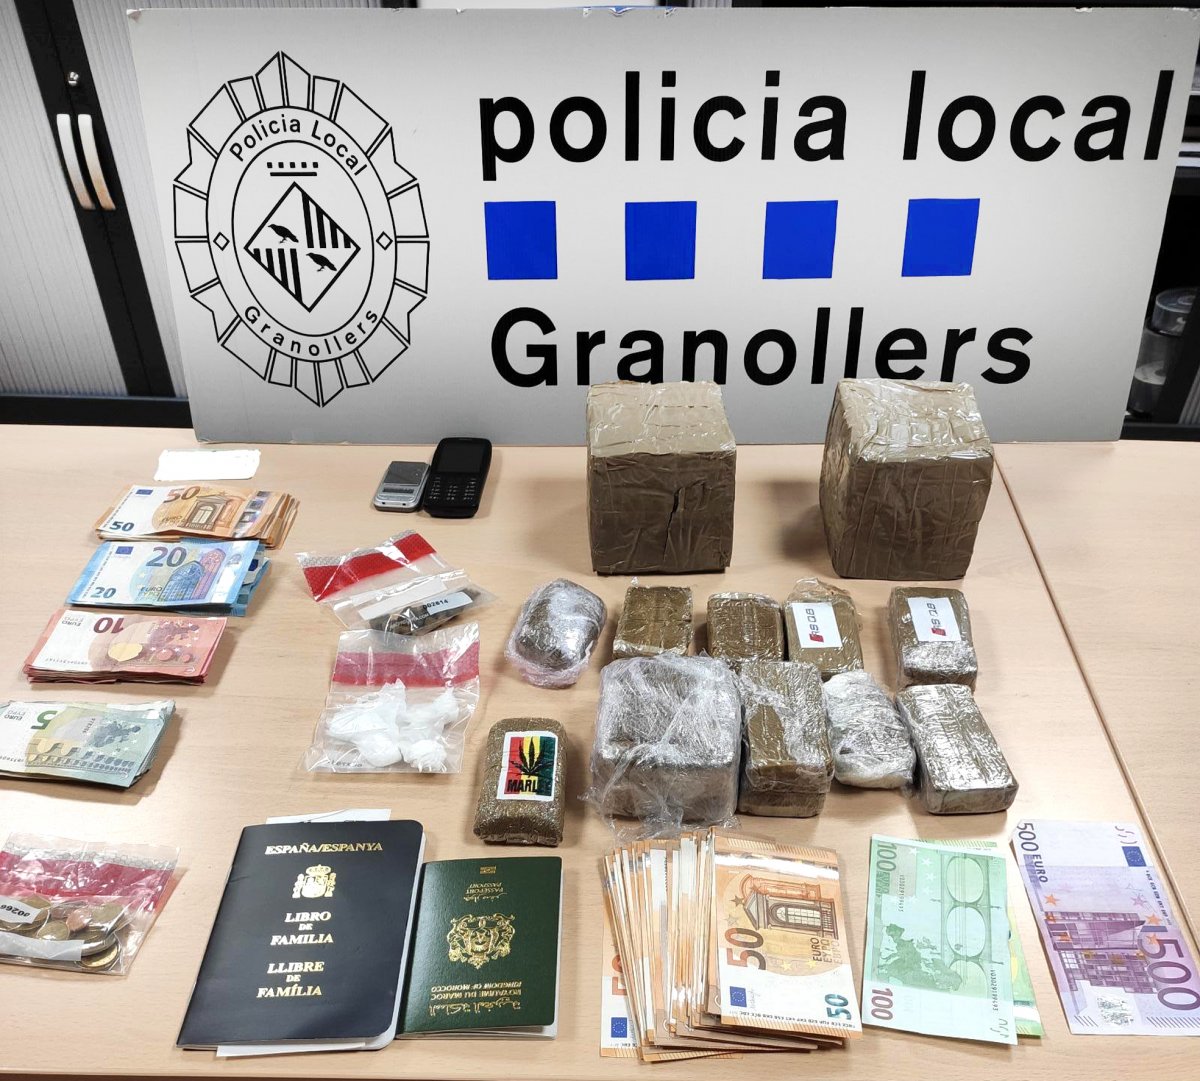 La droga, els diners i la resta de materials localitzats per la Policia Local al soterrani del bar